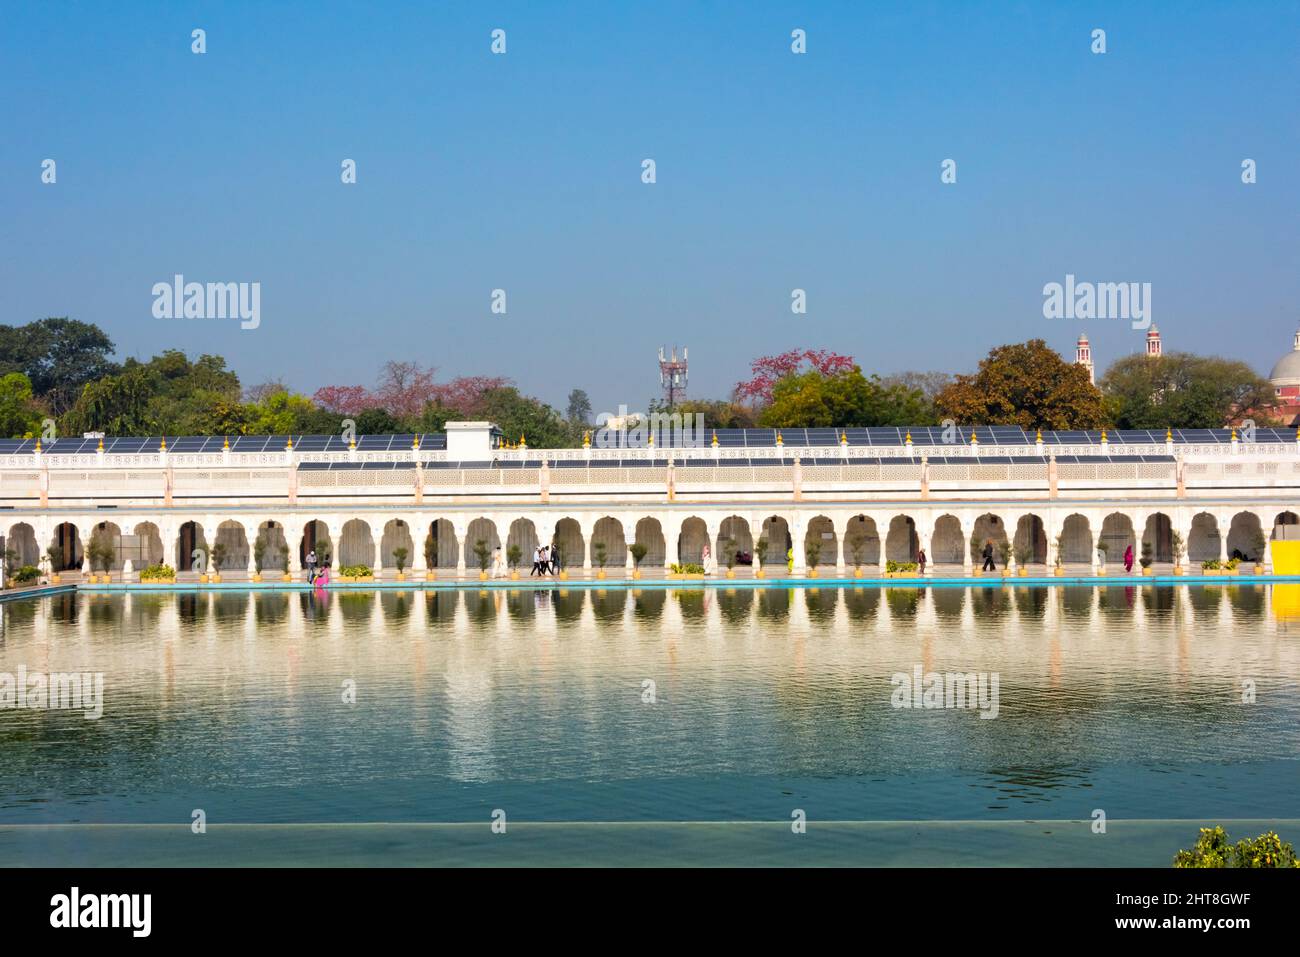 Pond in front of Gurudwara Bangla Sahib, Sikh house of worship, New Delhi, India Stock Photo